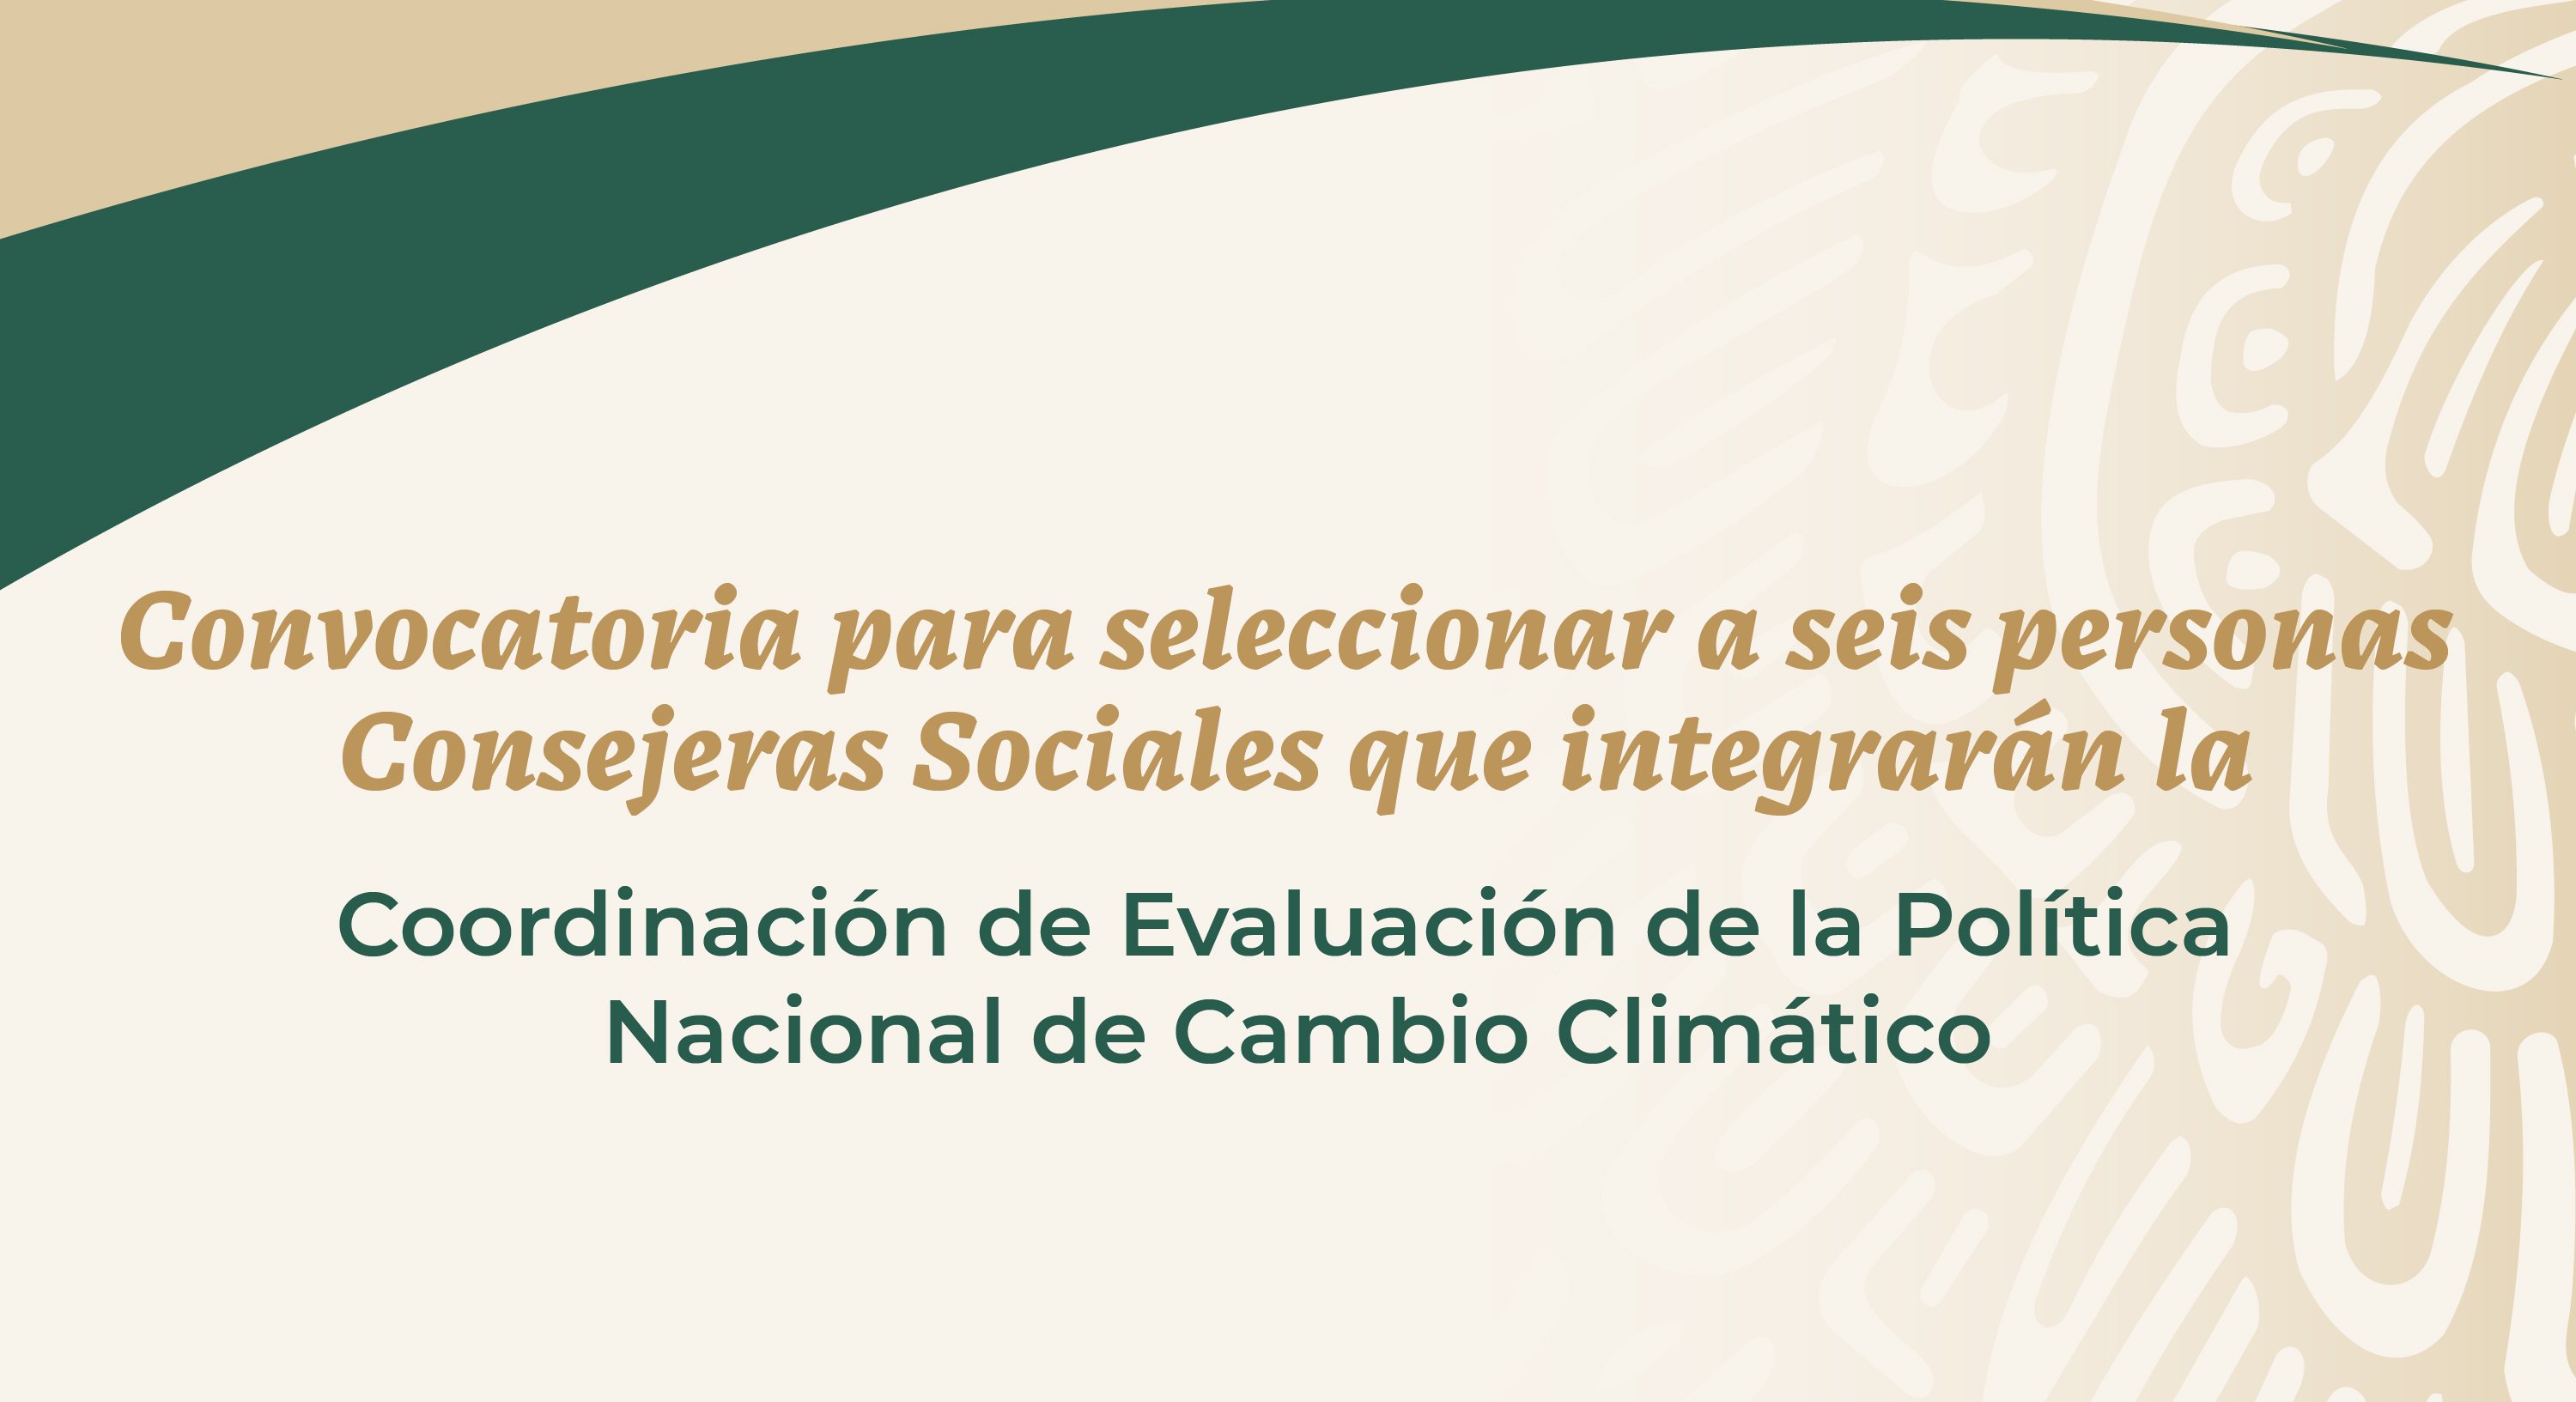 Convocatoria para seleccionar a seis personas Consejeras Sociales que integrarán la Coordinación de Evaluación de la Política Nacional de Cambio Climático.